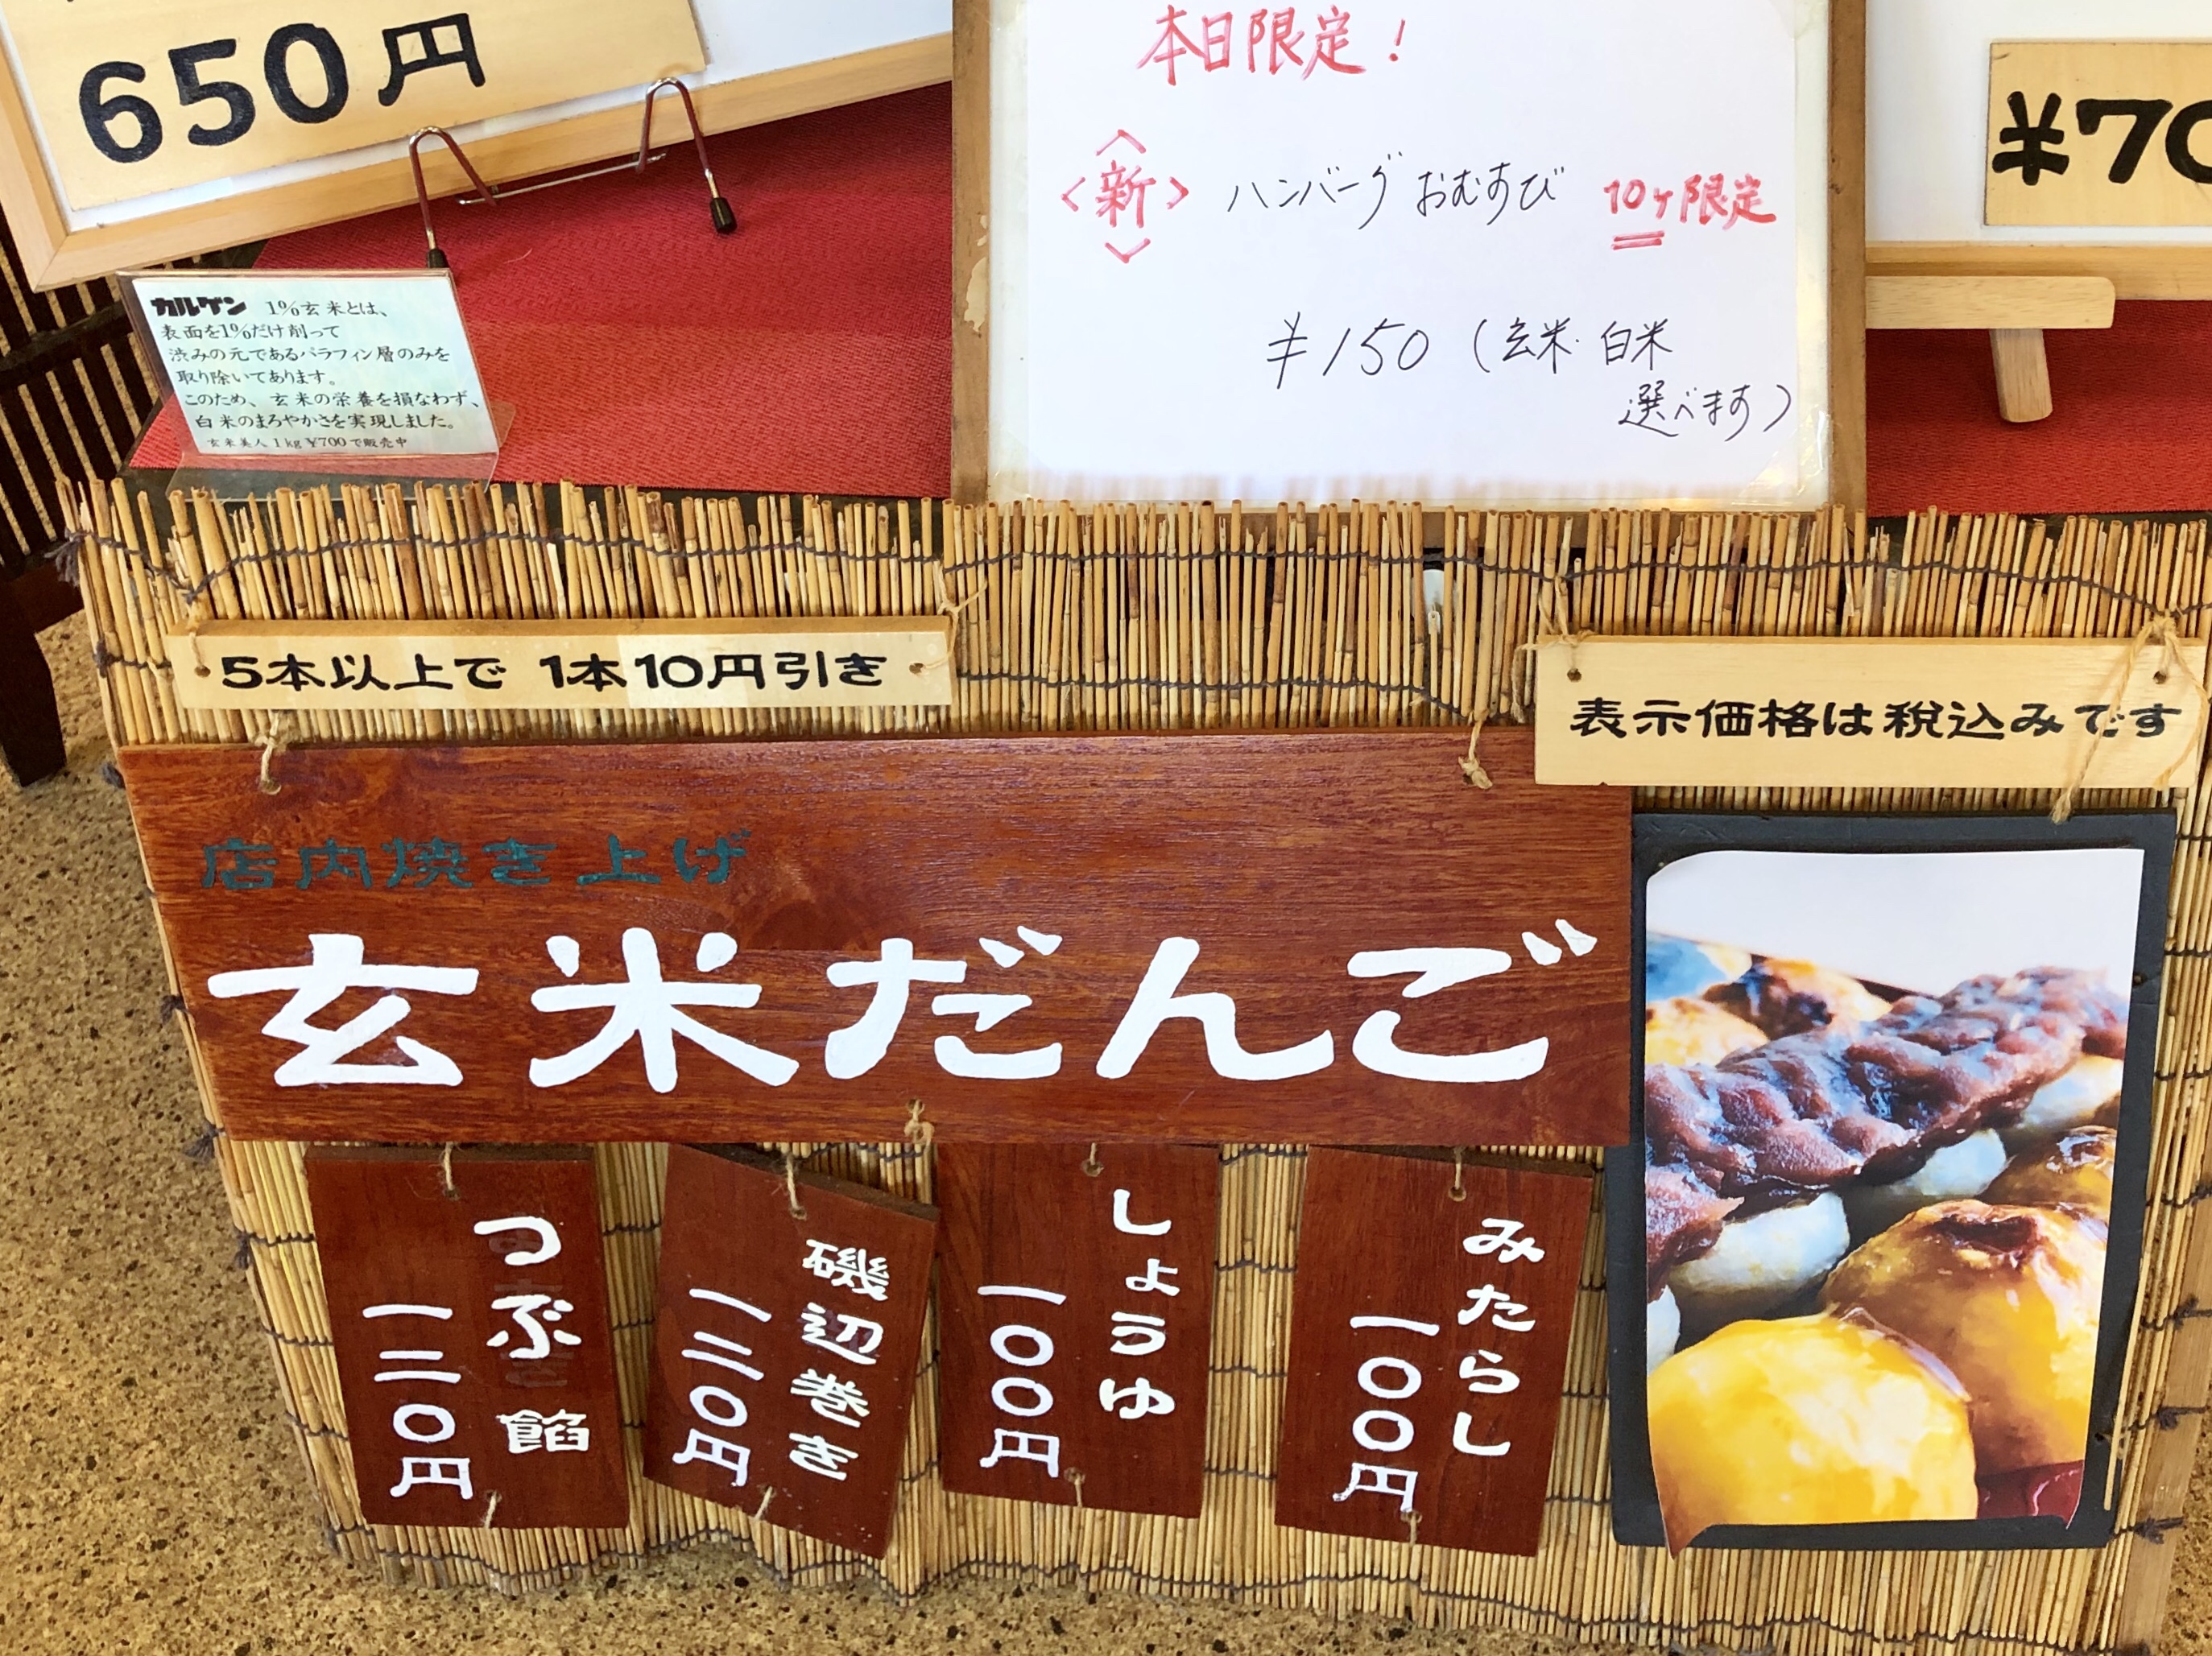 金沢市のおにぎり屋さんの玄米だんご